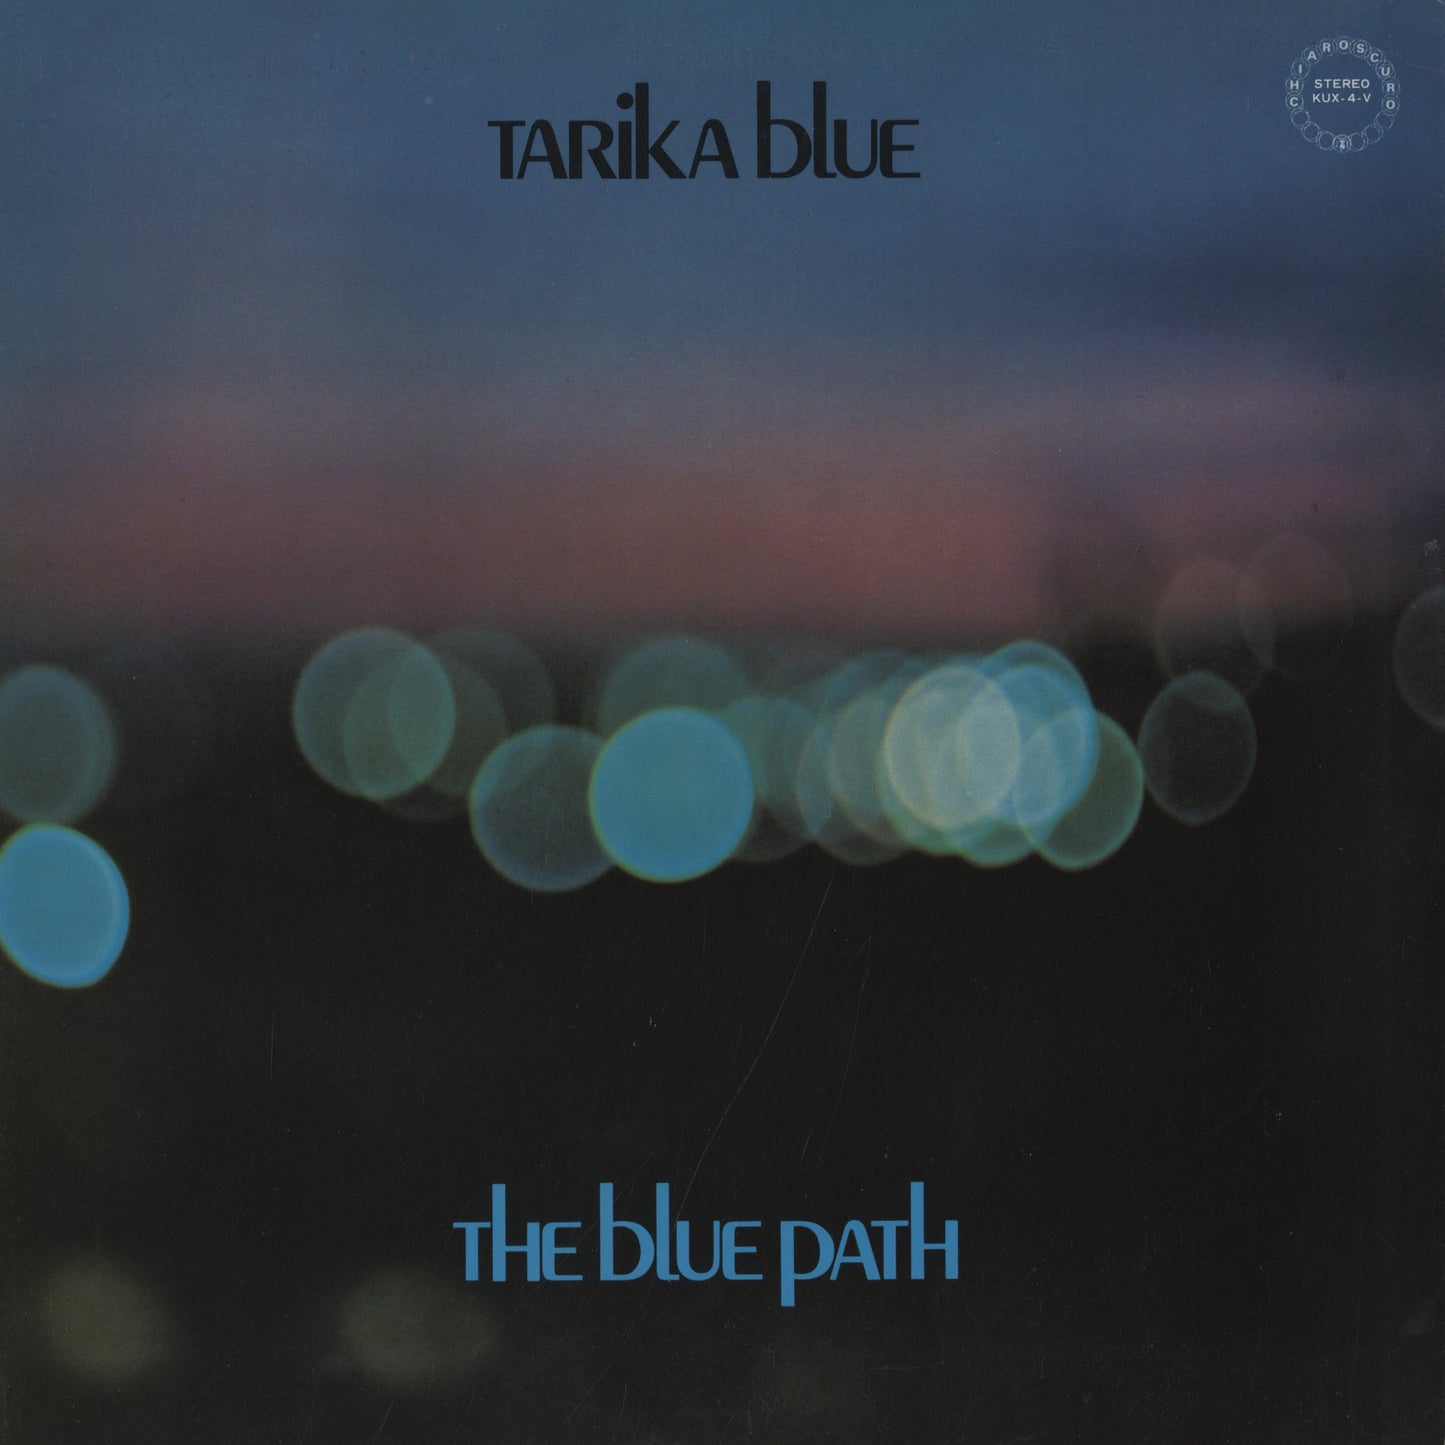 Tarika Blue / タリカ・ブルー / The Blue Path (KUX-4V)